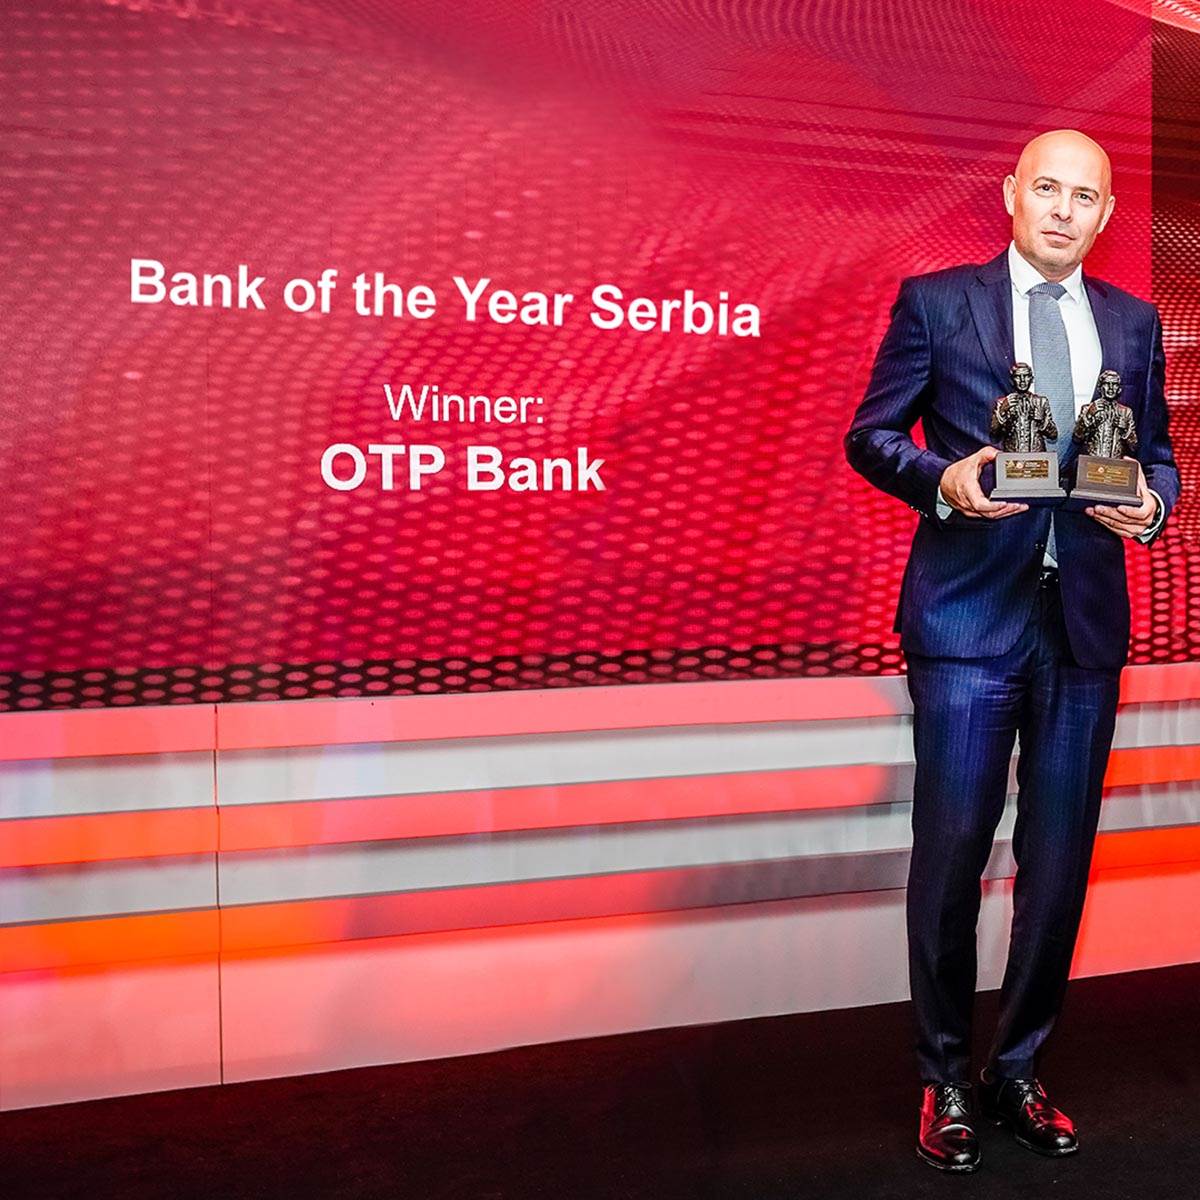  OTP banka dobitnik je nagrade za najbolju banku u Srbiji prestižnog magazina „The Banker“ 